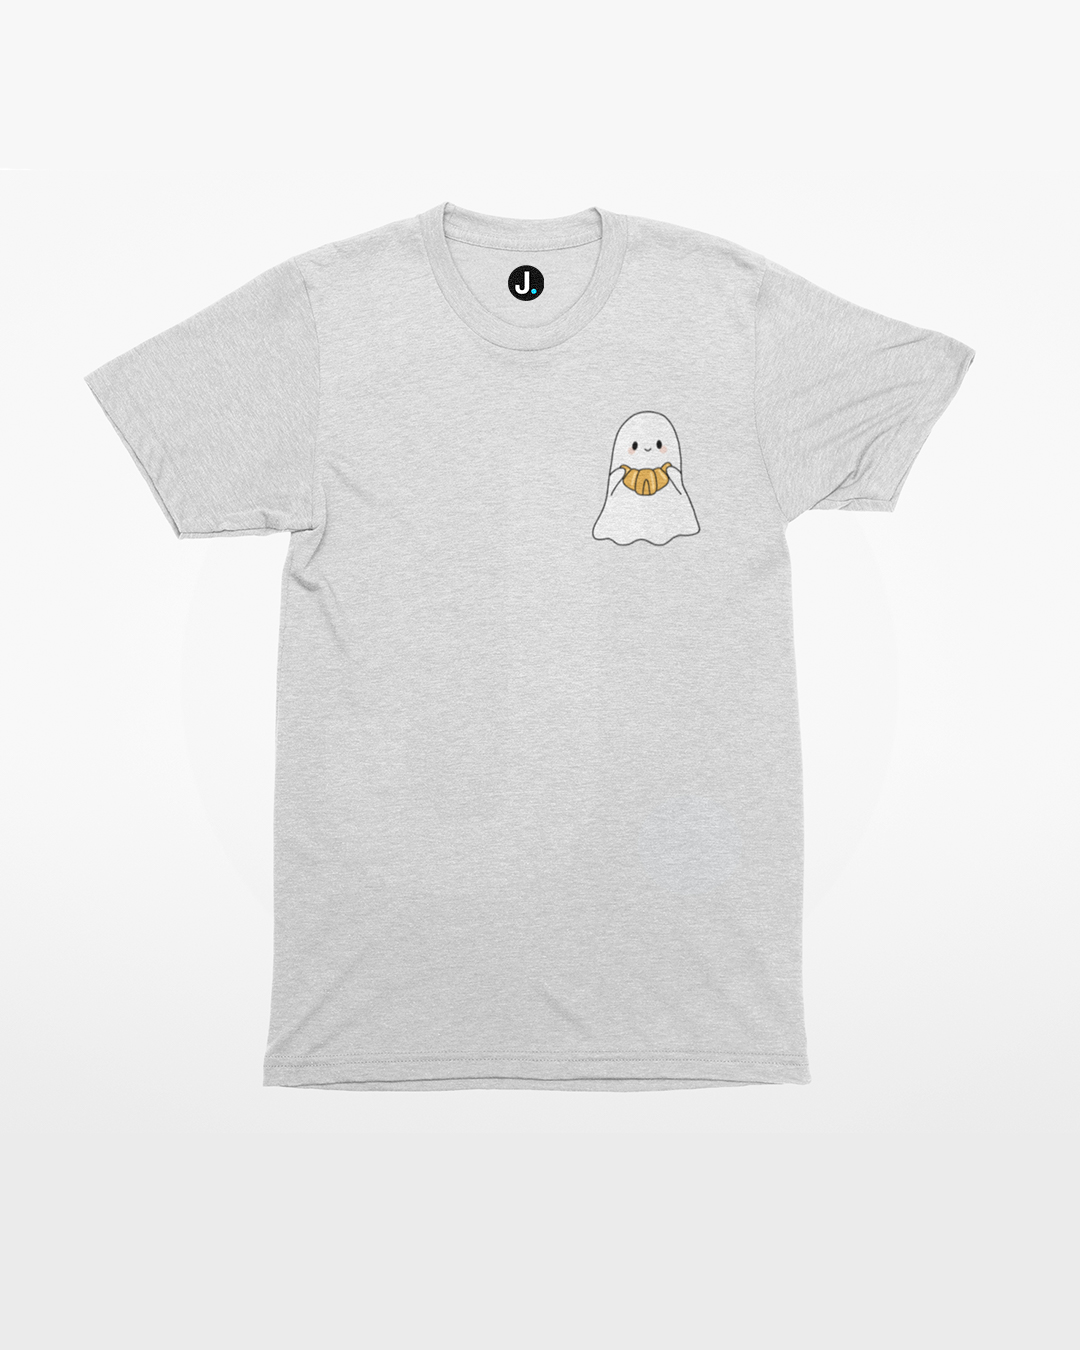 Cute Croissant Ghost T-Shirt- Kawaii Ghost Halloween T-Shirt - Cute Spooky Season T-Shirt - Cute Croissant Ghost Halloween T-Shirt